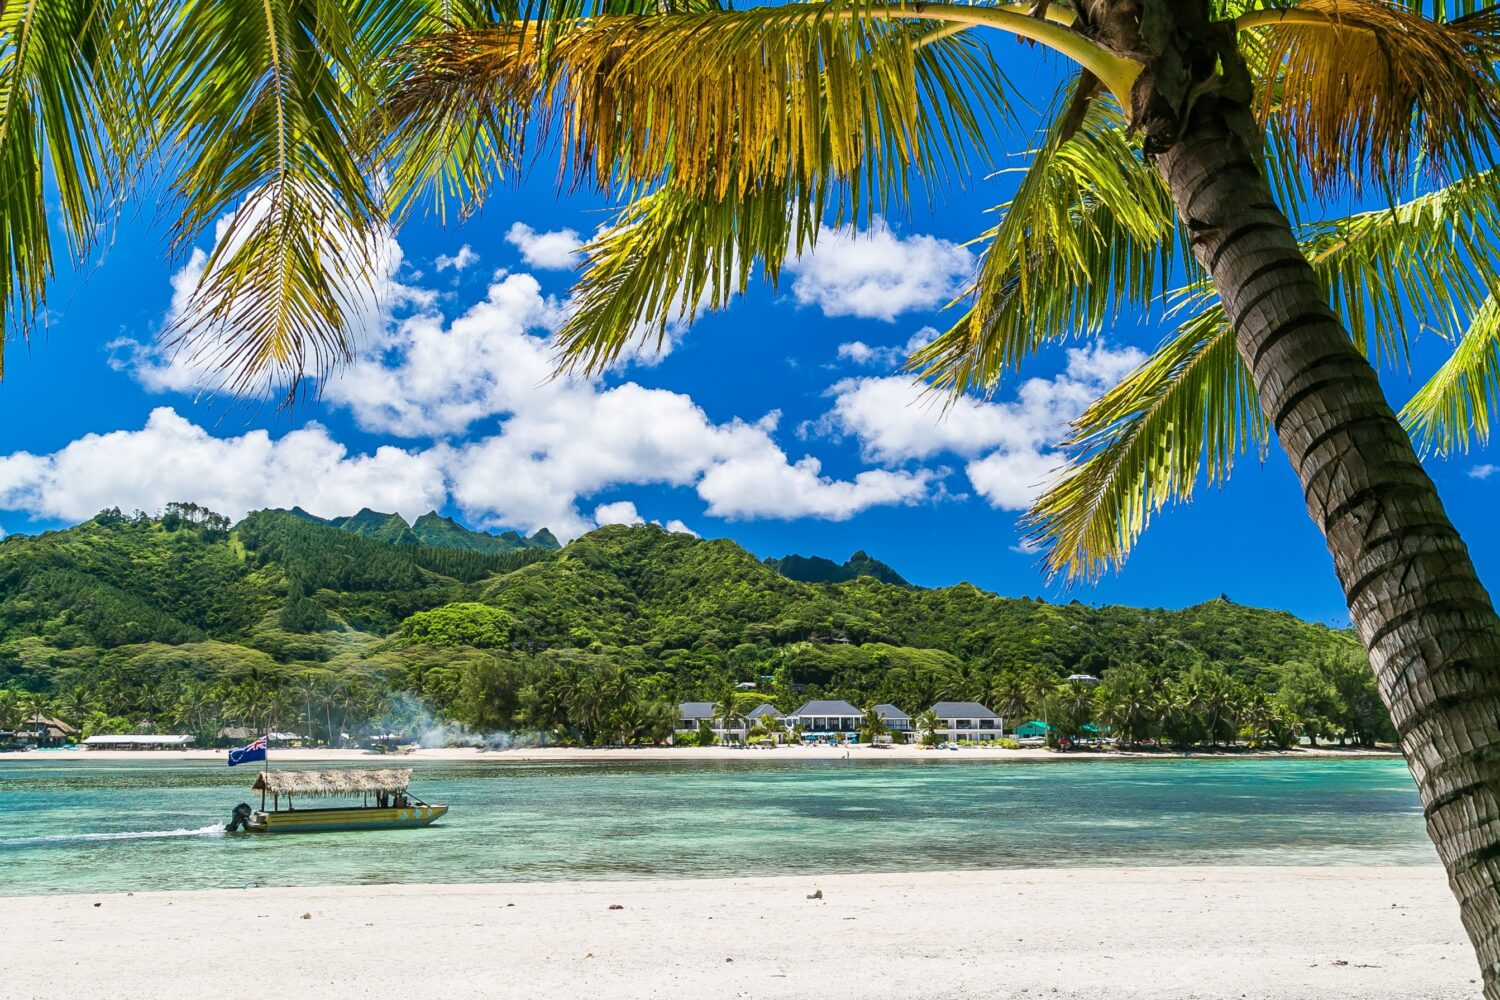 Baia tropicale, destinazione paradisiaca delle Isole Cook.  Costa di Rarotonga con palme durante una giornata di sole.  Una barca con la bandiera delle Isole Cook sul mare.  Cielo azzurro con nuvole.  Parzialmente nuvoloso.